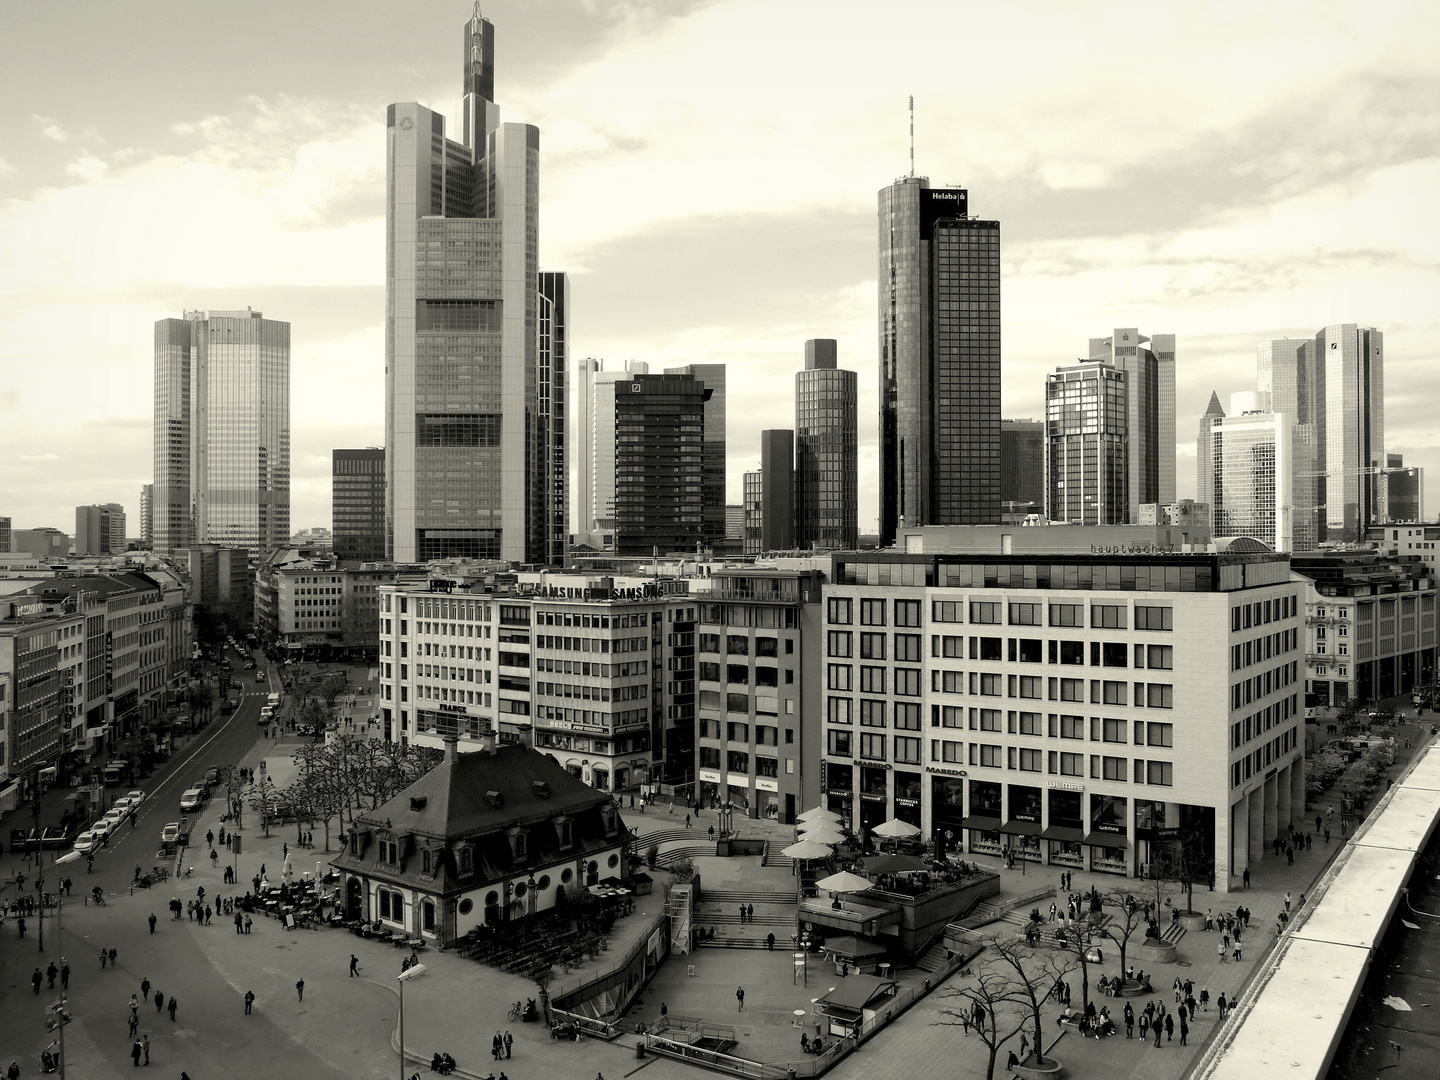 Architektonische Kontraste in Frankfurt am Main - NB